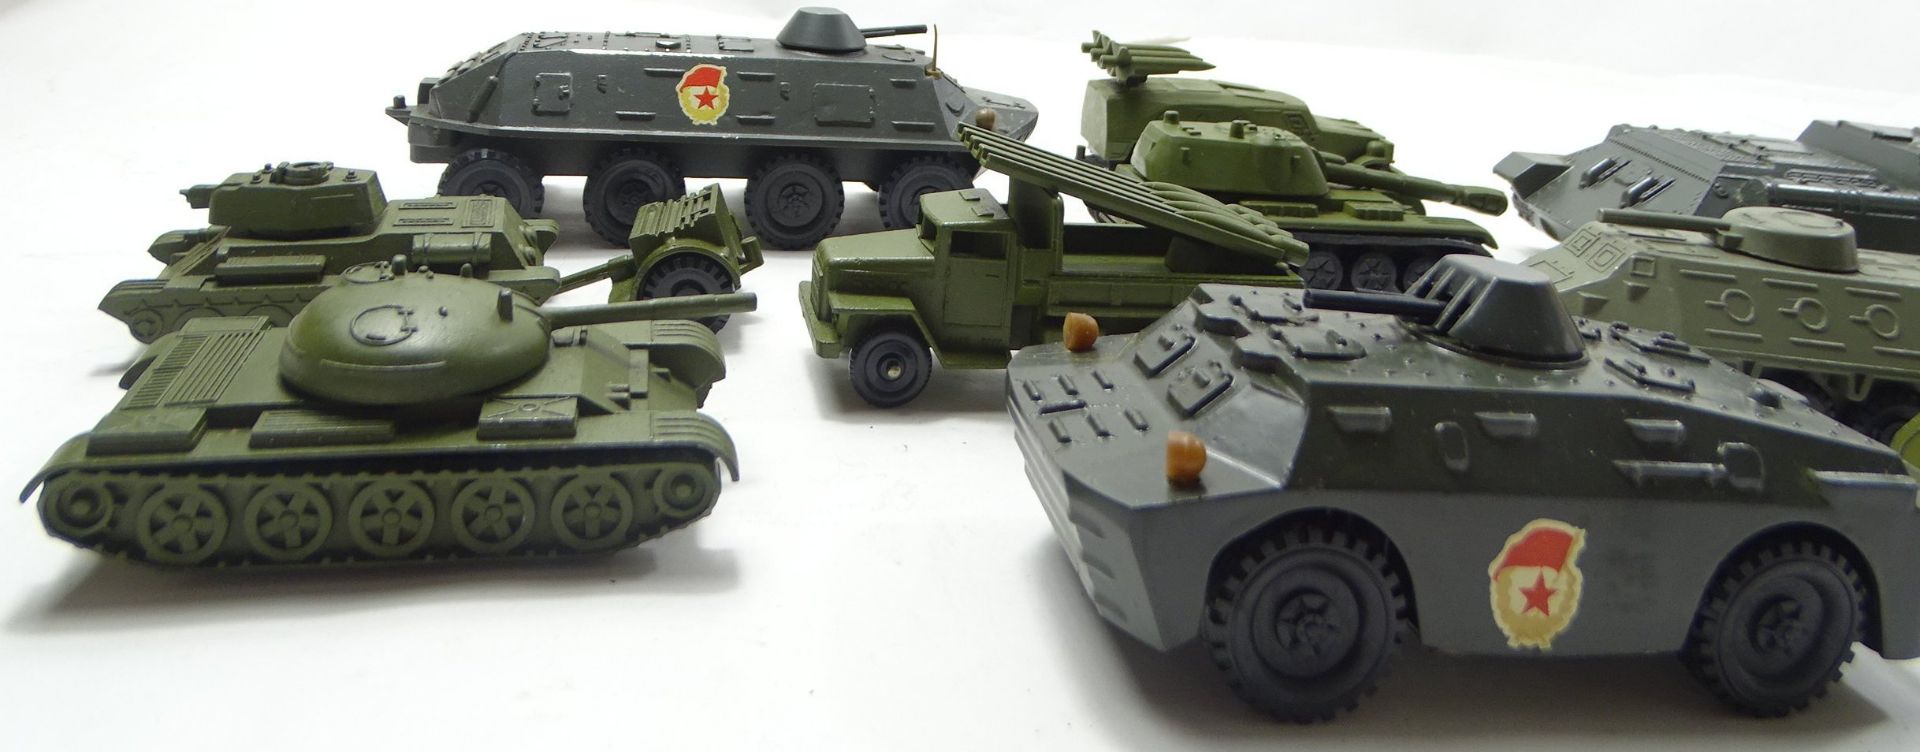 12 Panzer- bzw. Militärfahrzeugmodelle, Metall, größter Panzer: L. 23 cm, B. 7 cm, mit Altersspuren - Bild 2 aus 6